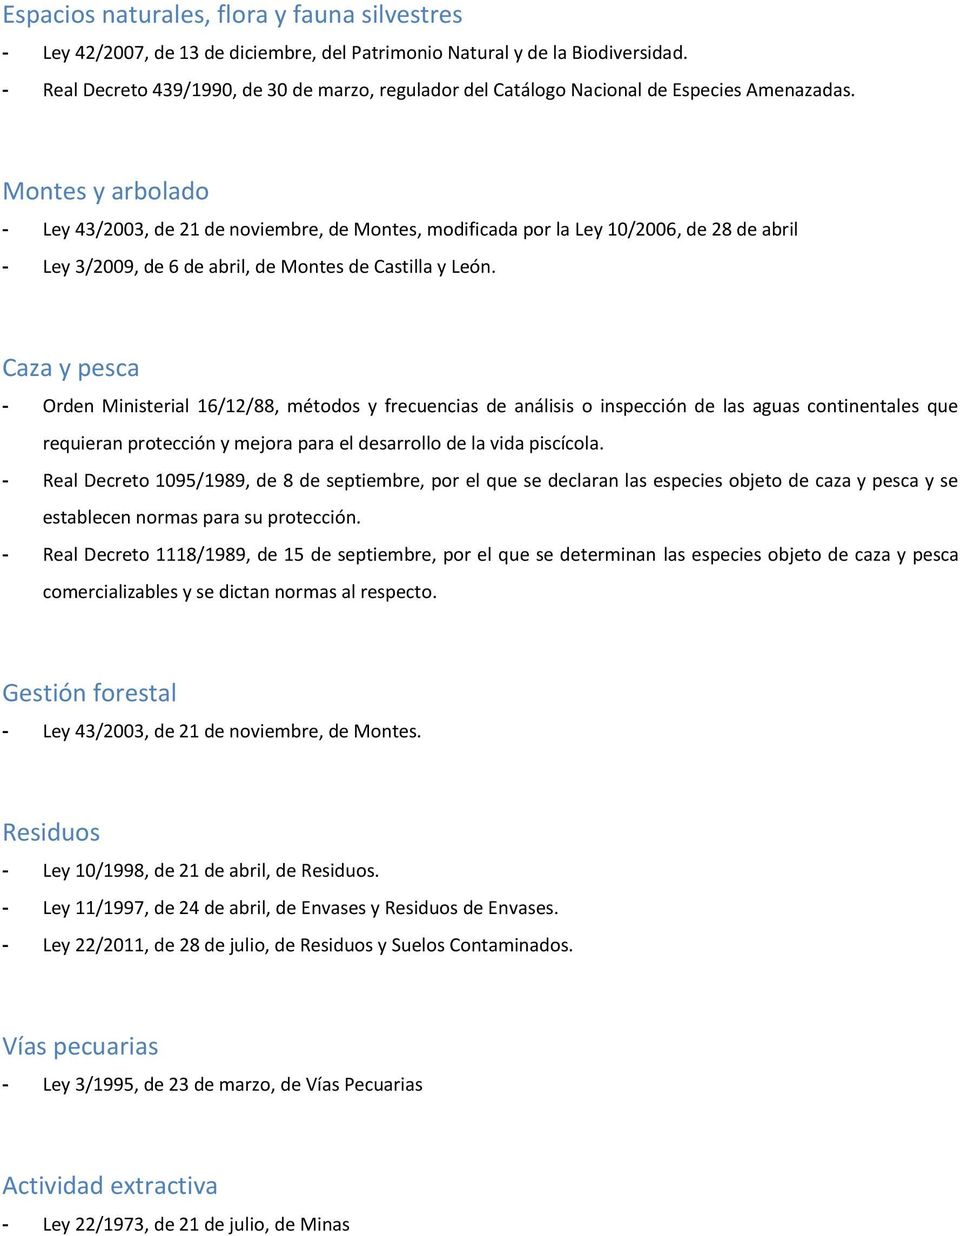 Montes y arbolado - Ley 43/2003, de 21 de noviembre, de Montes, modificada por la Ley 10/2006, de 28 de abril - Ley 3/2009, de 6 de abril, de Montes de Castilla y León.